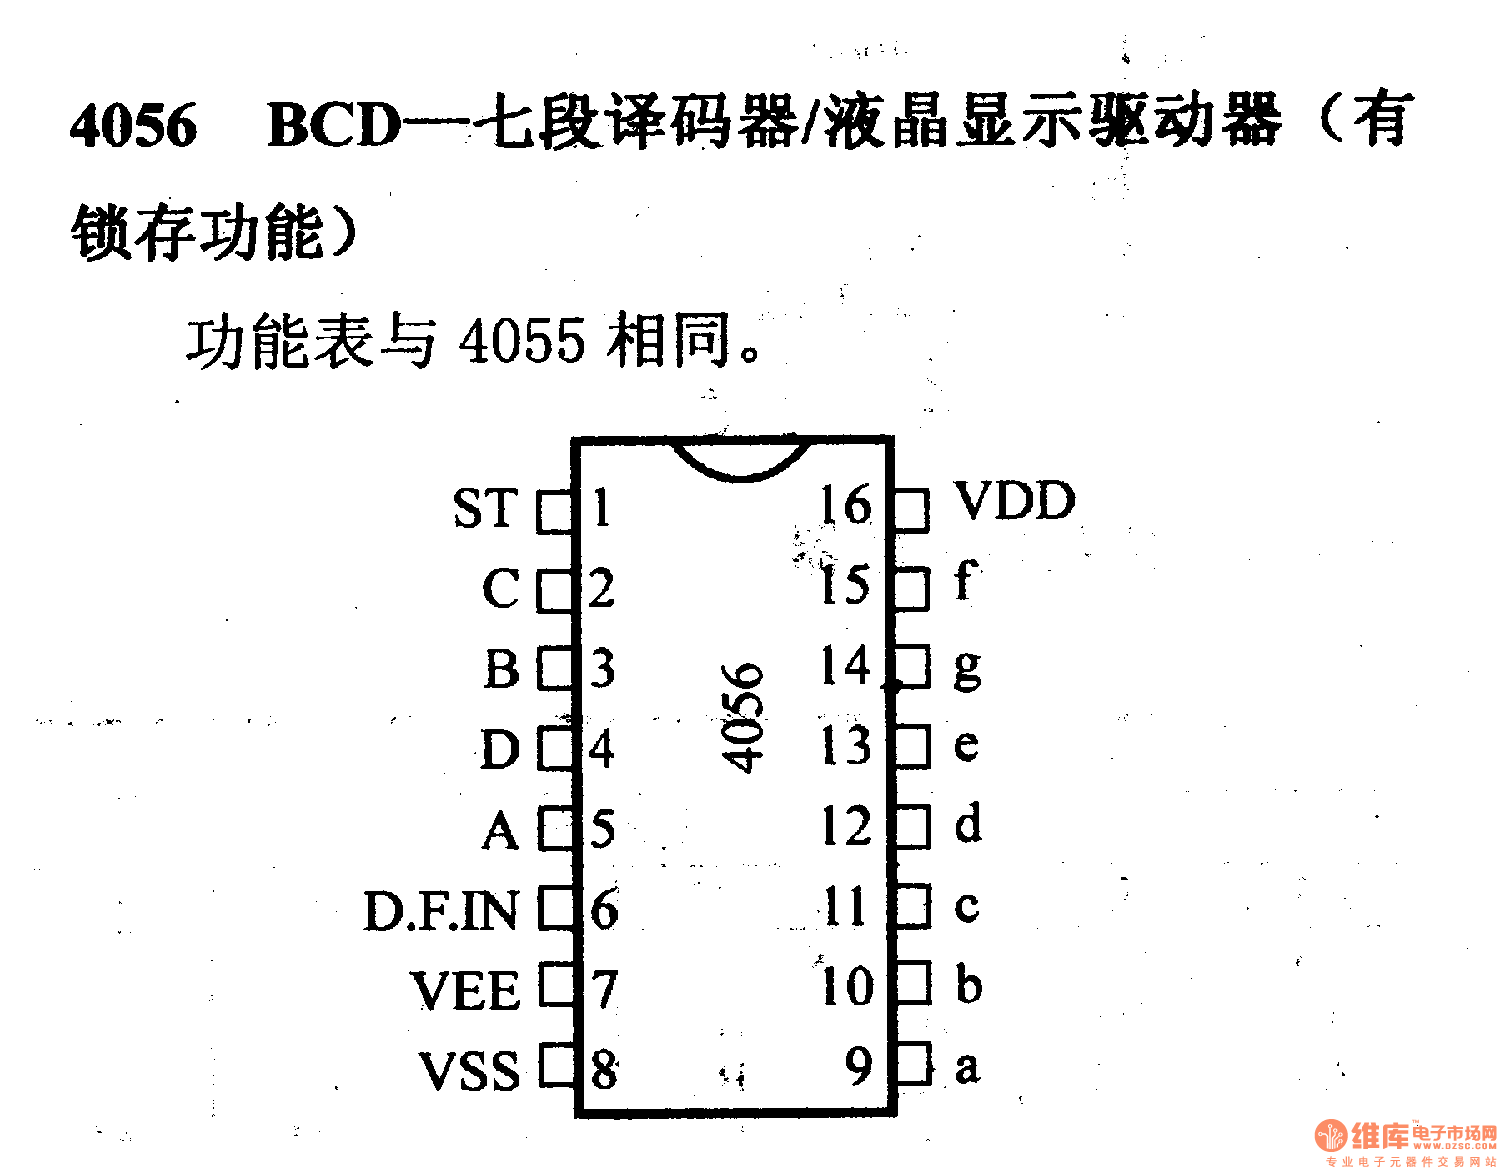 4000系列数字电路,4056,BCD-七段译码器/液晶显示驱有能力器(有锁存功能)